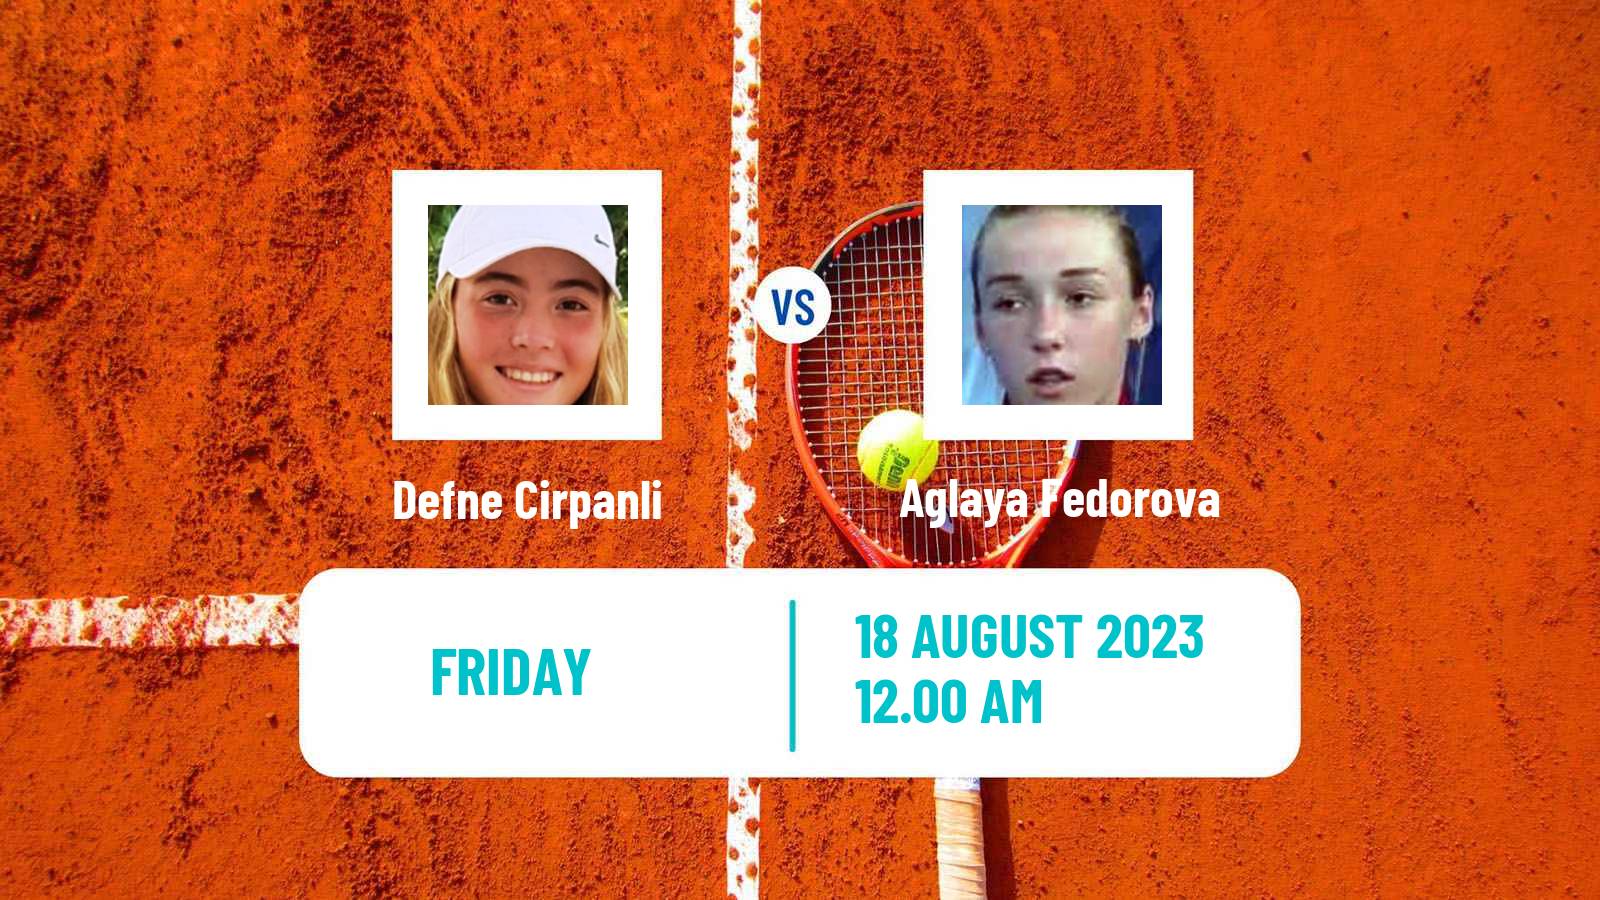 Tennis ITF W15 Ust Kamenogorsk 2 Women Defne Cirpanli - Aglaya Fedorova